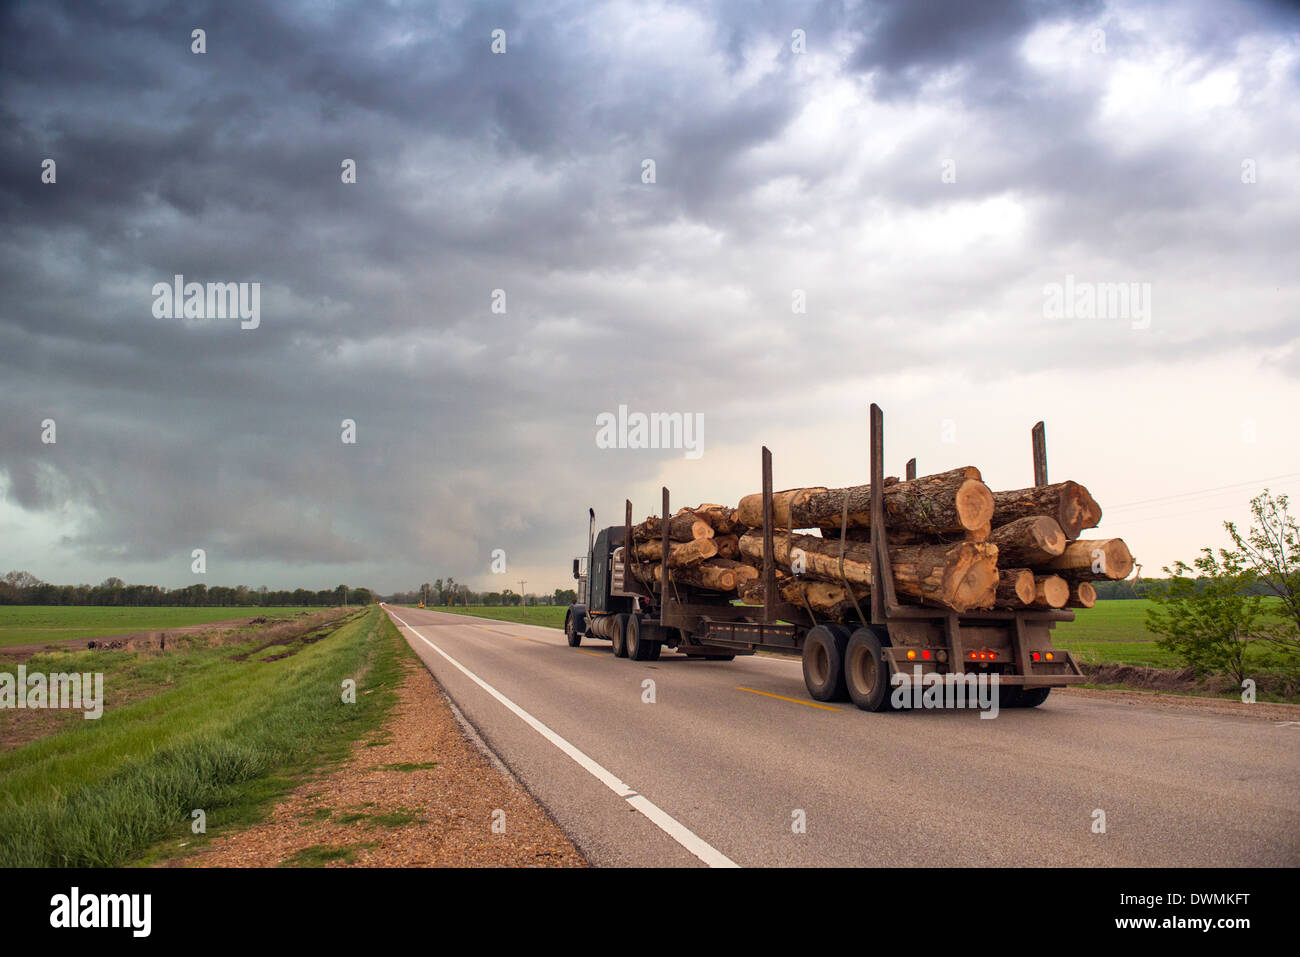 Dans le Mississippi de grumier roulant dans le coeur d'un orage, avec une veille de tornade, États-Unis d'Amérique Banque D'Images